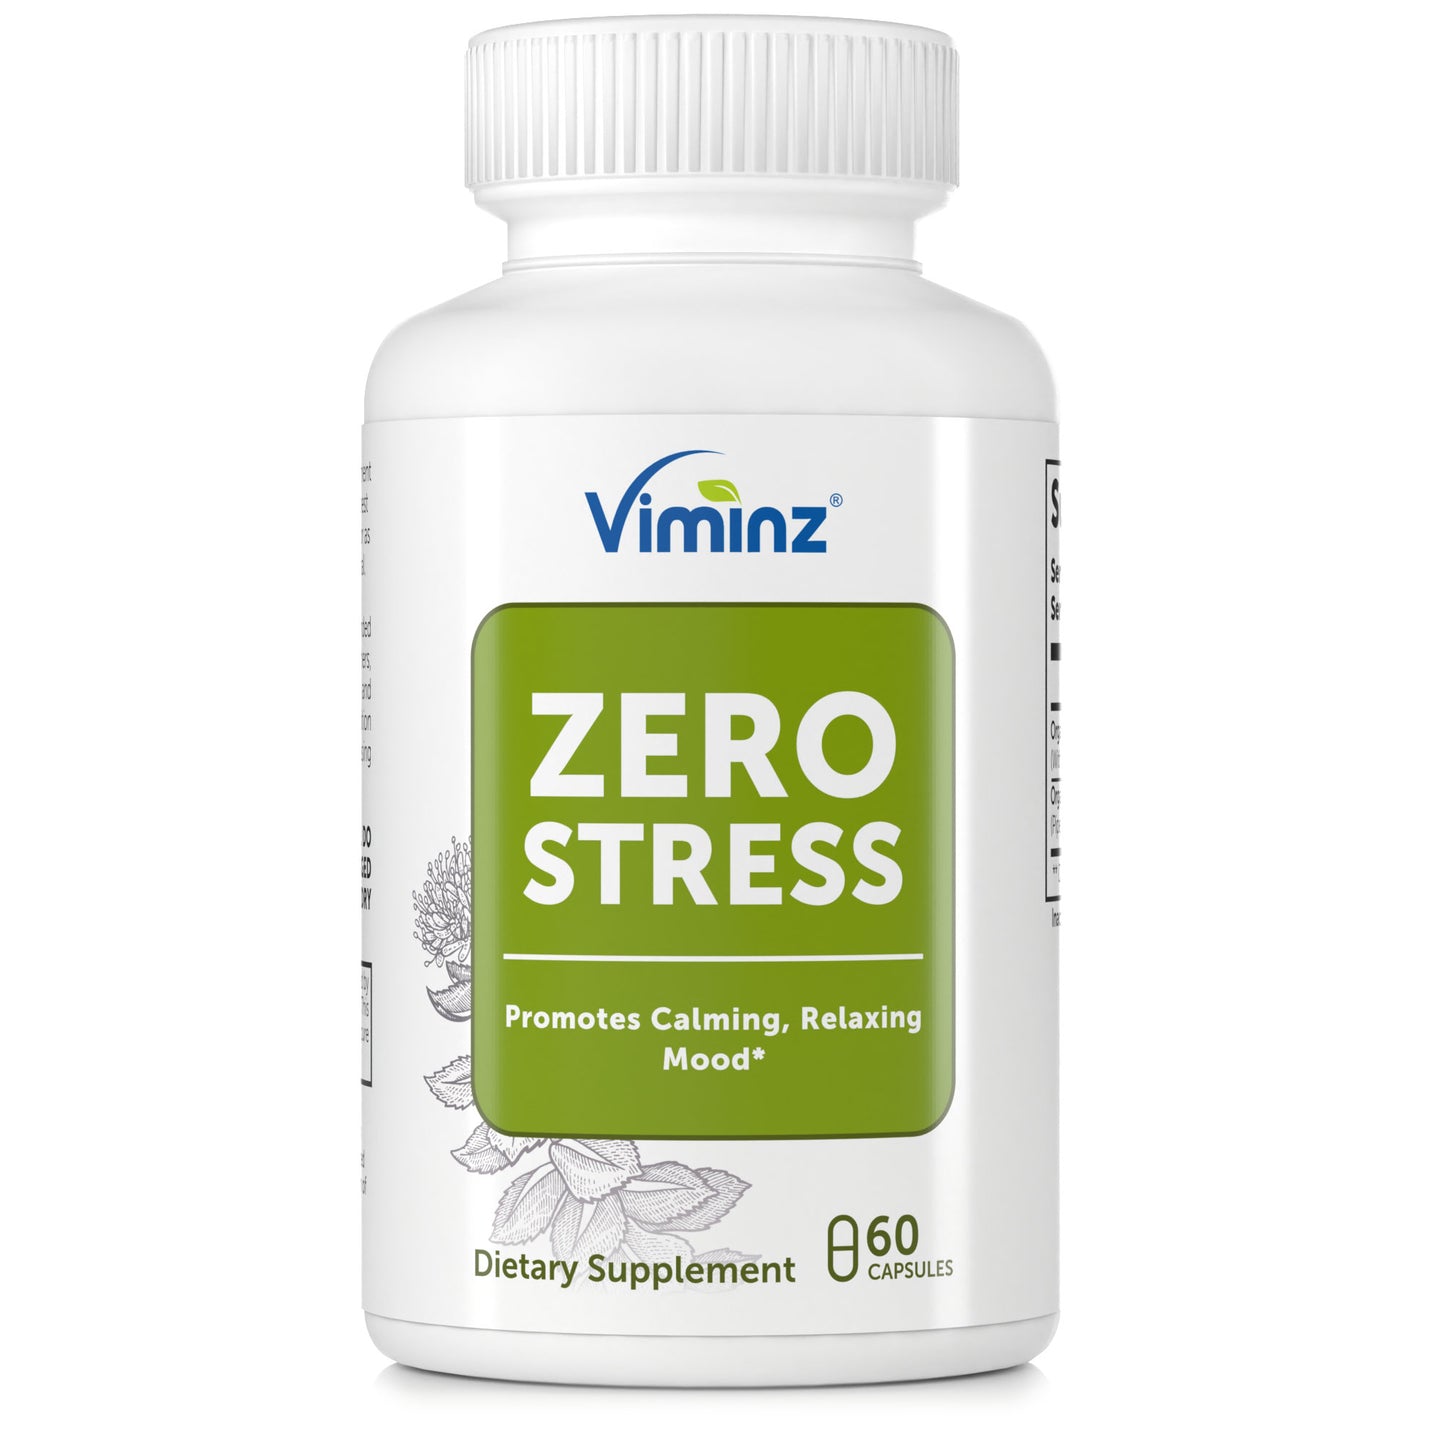 ZERO STRESS - Promueve un estado de ánimo calmante y relajante* - 60 cápsulas